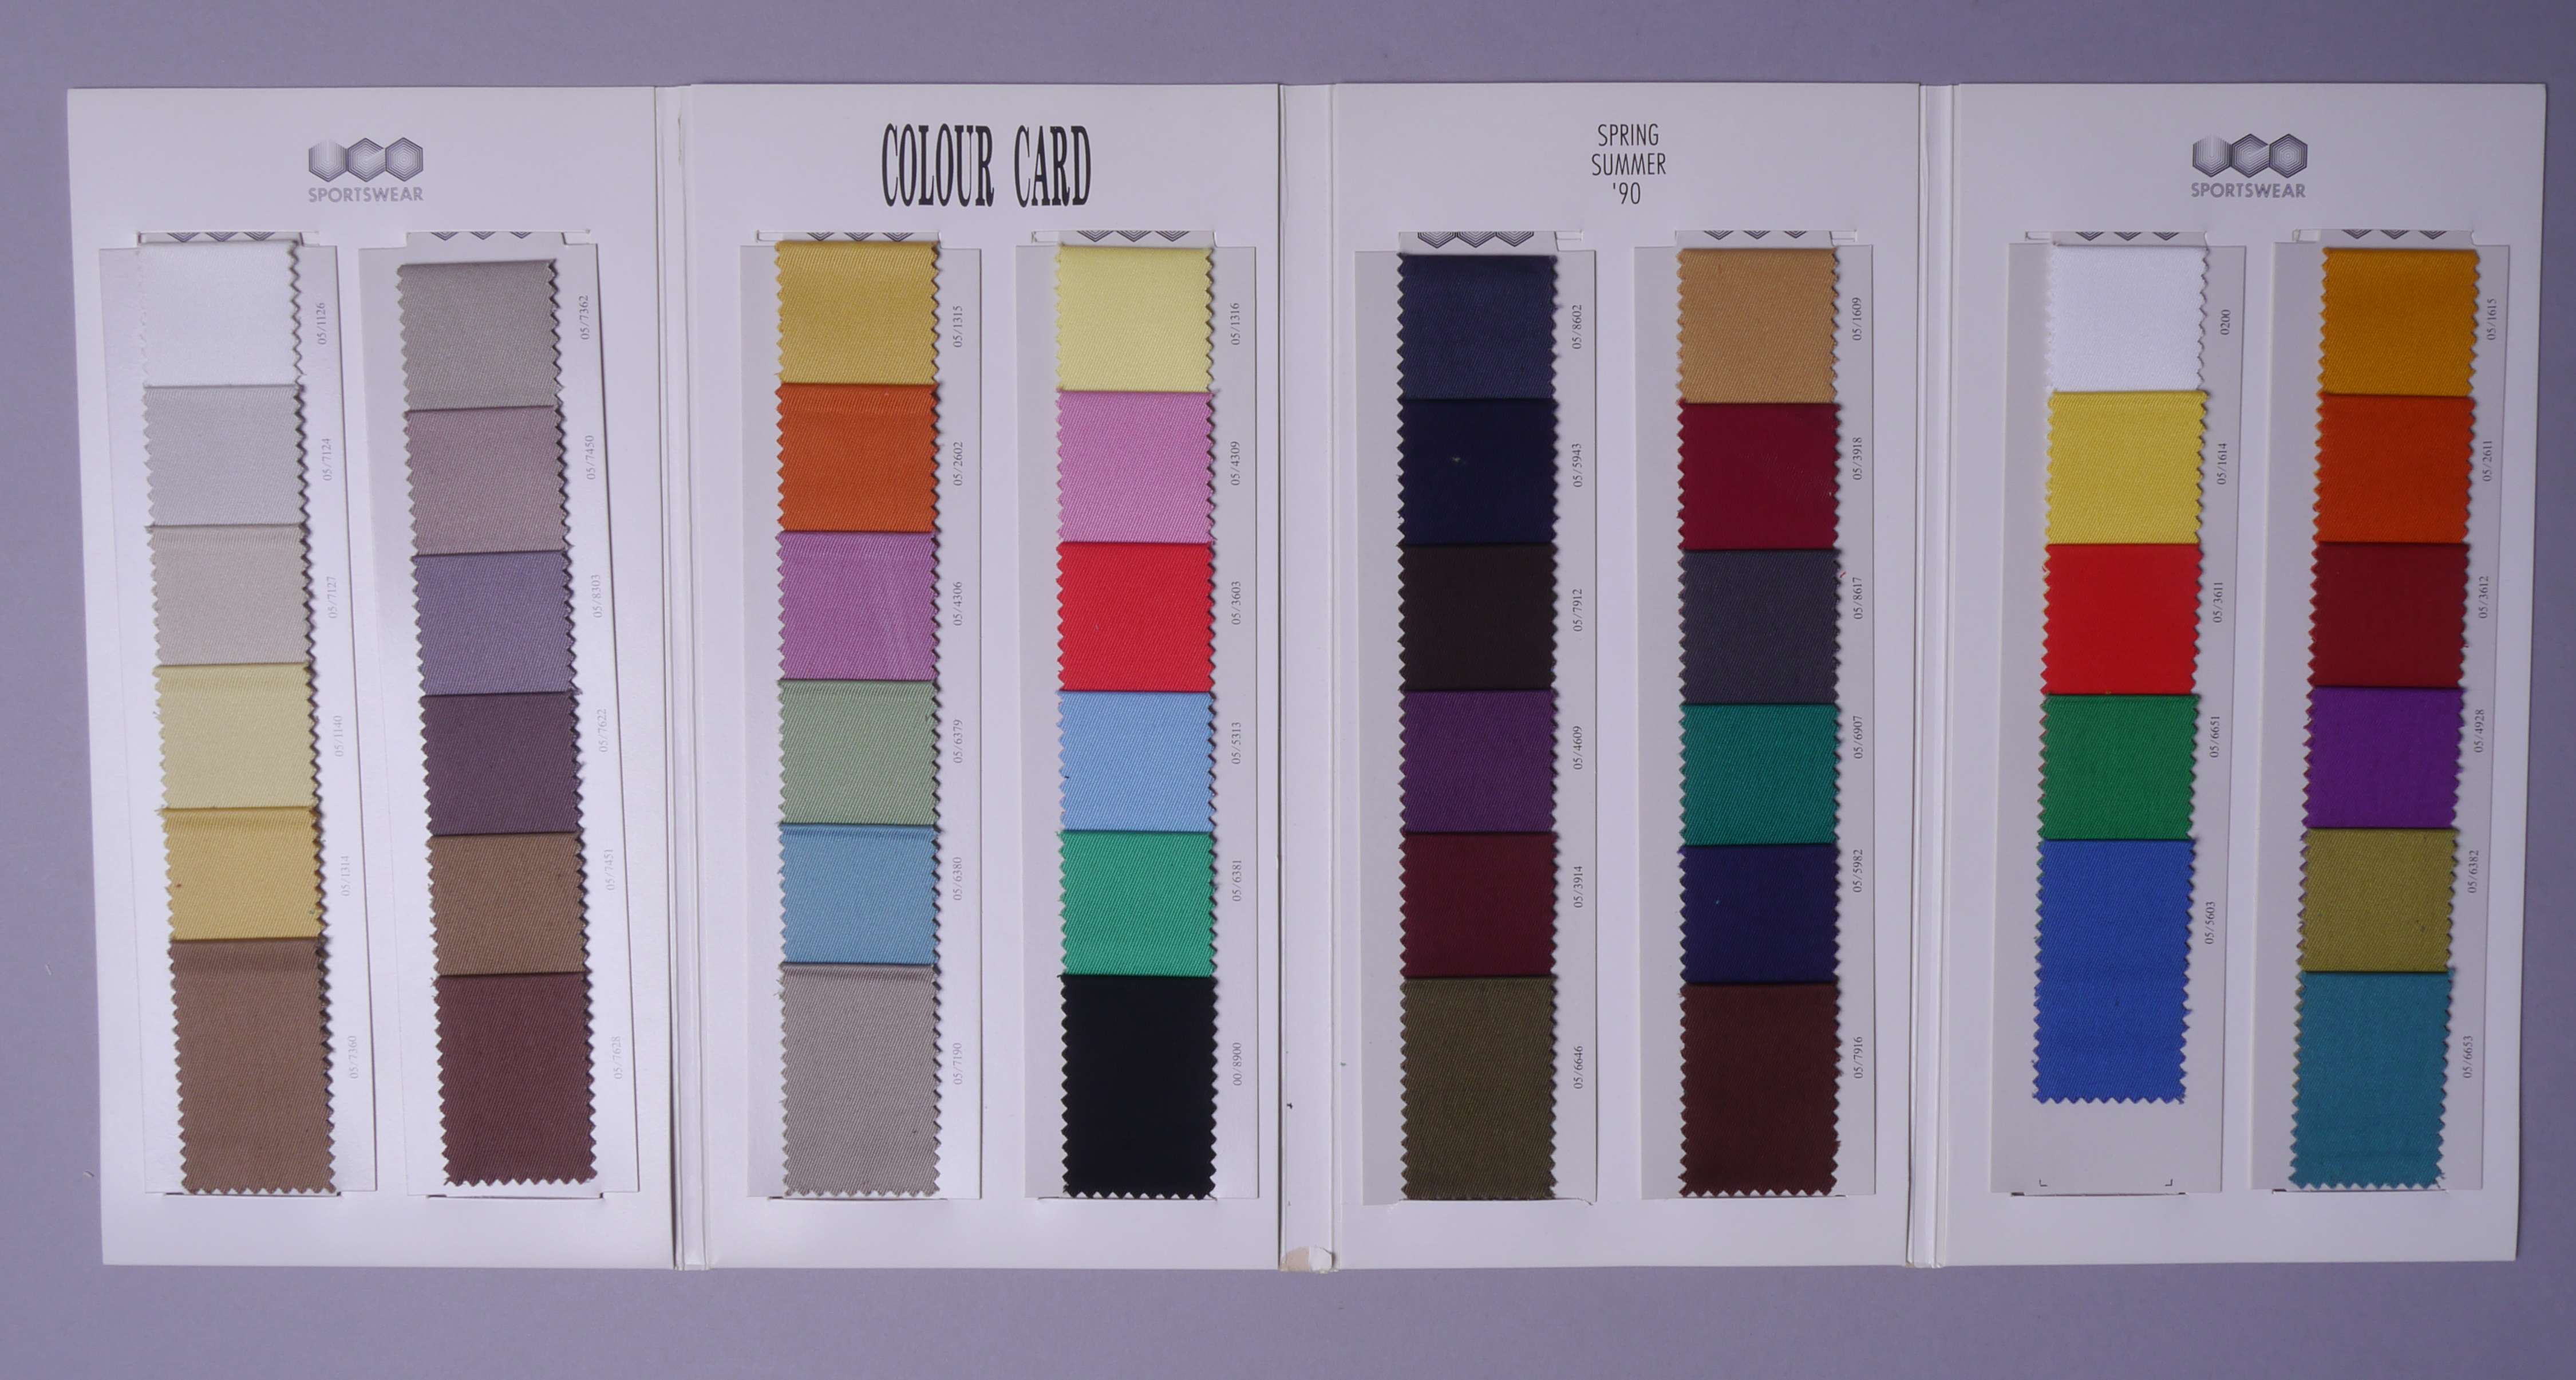 Staalboek met textielstalen van UCO Sportswear